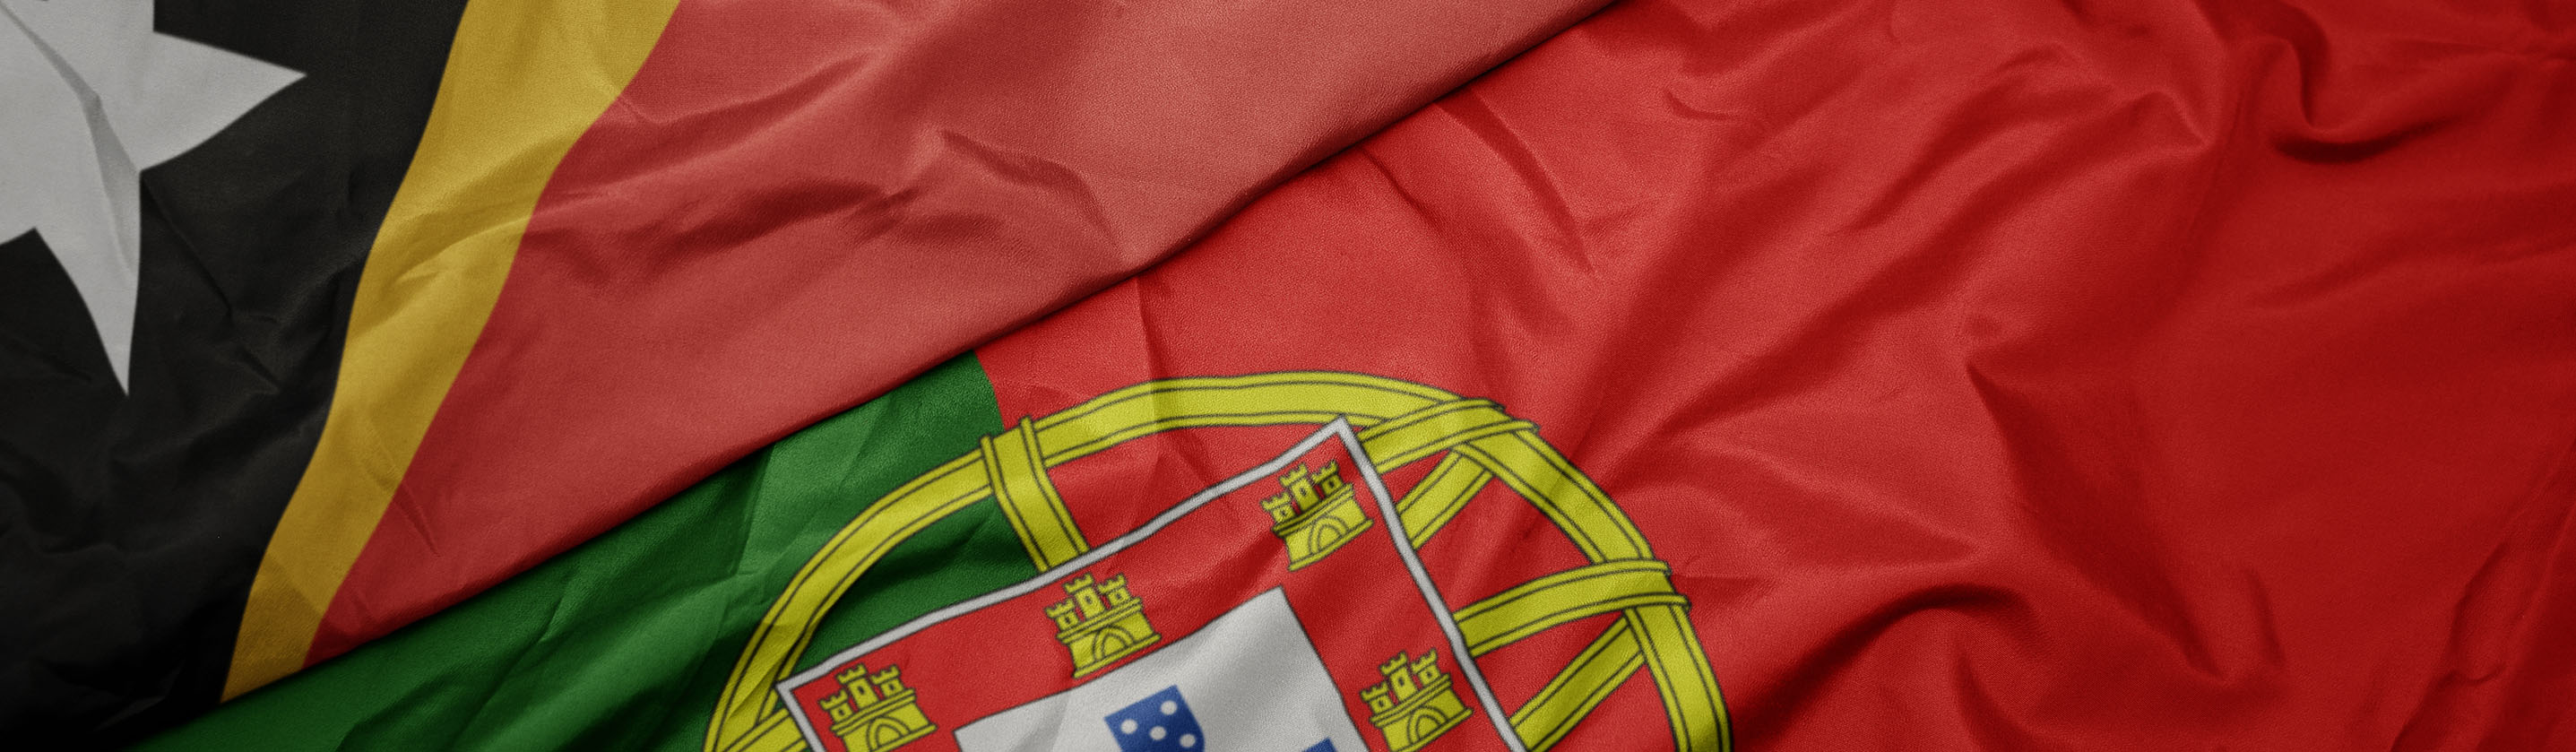 bandeira timor leste e bandeira de portugal